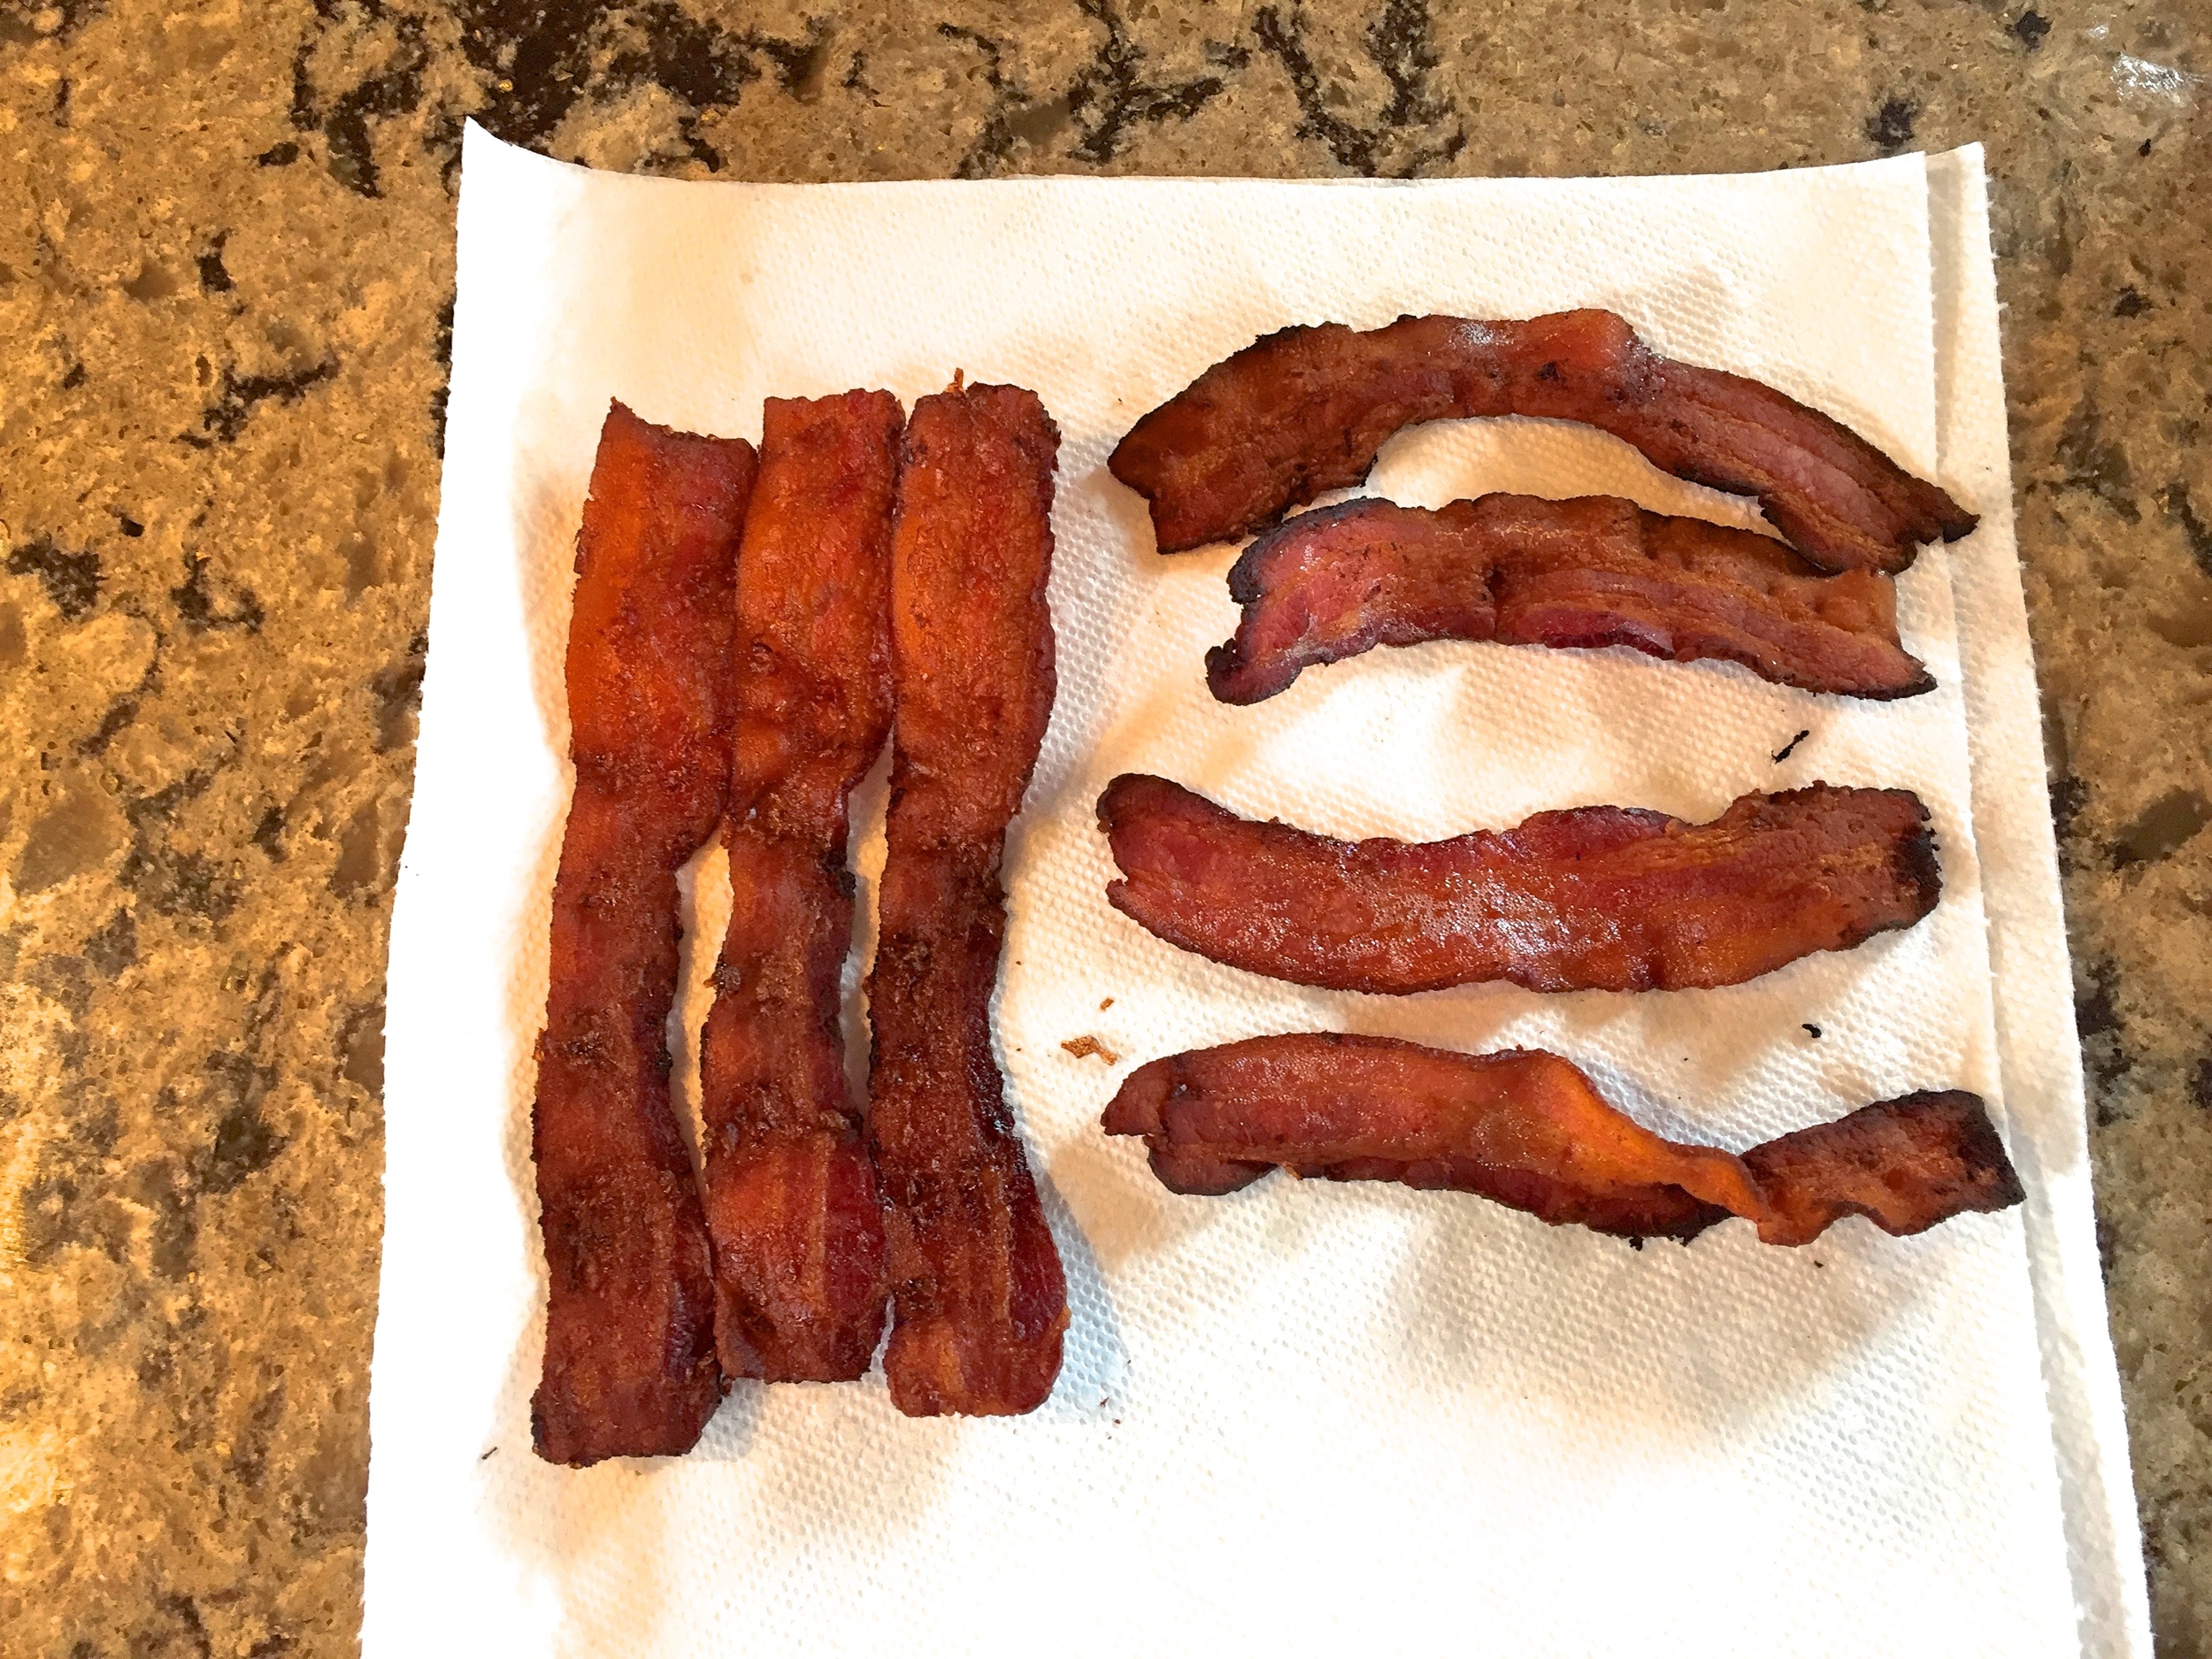 Baked vs Fried Bacon - Baked looks best